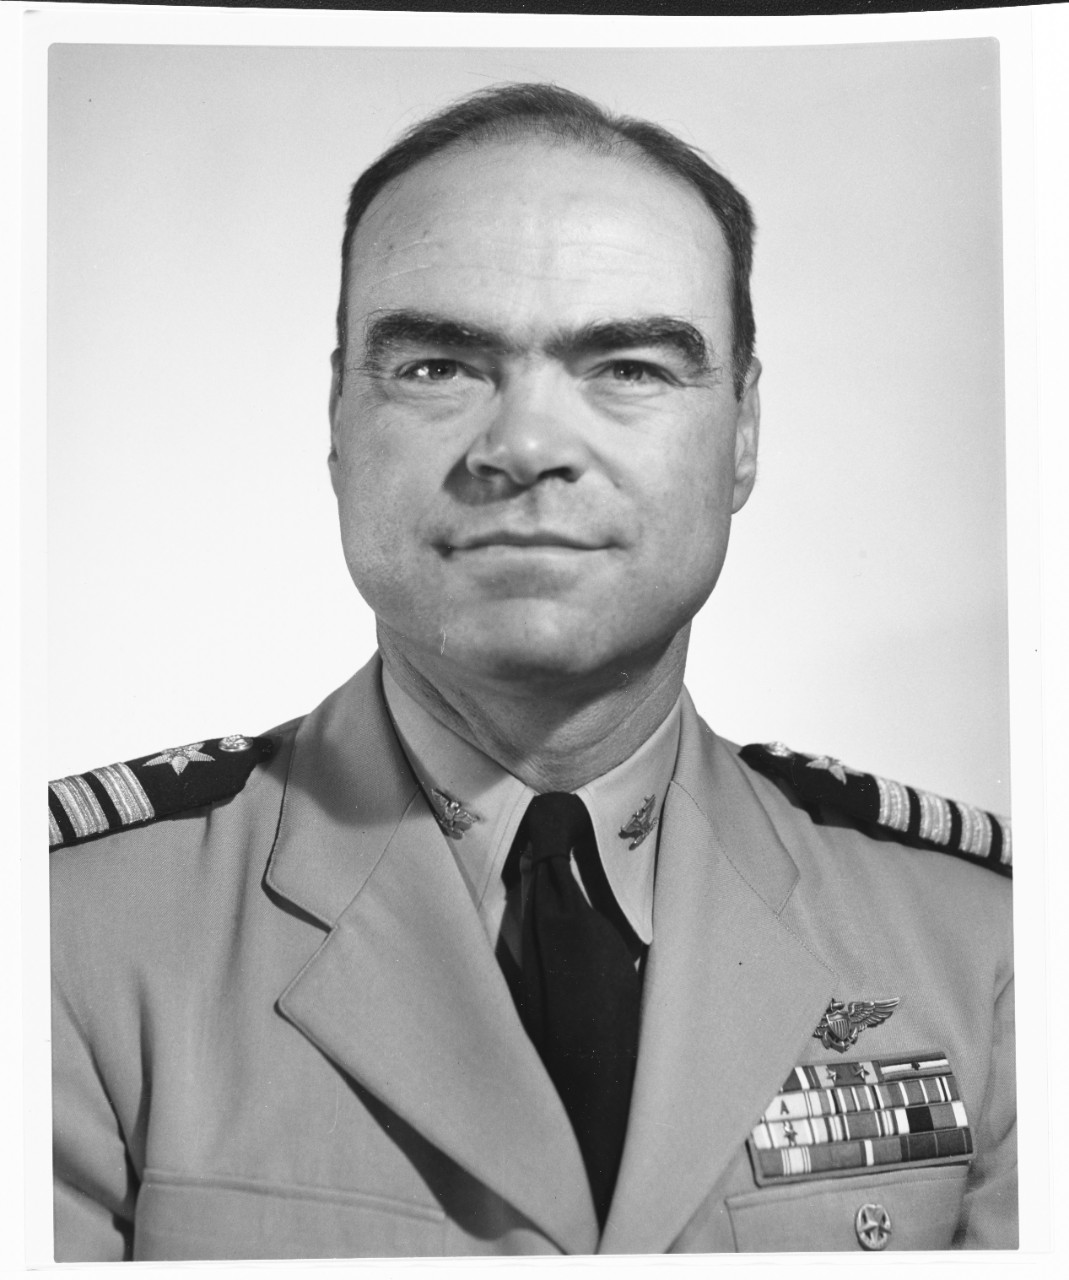 Captain Pierre N. Charbonnet, Jr., USN